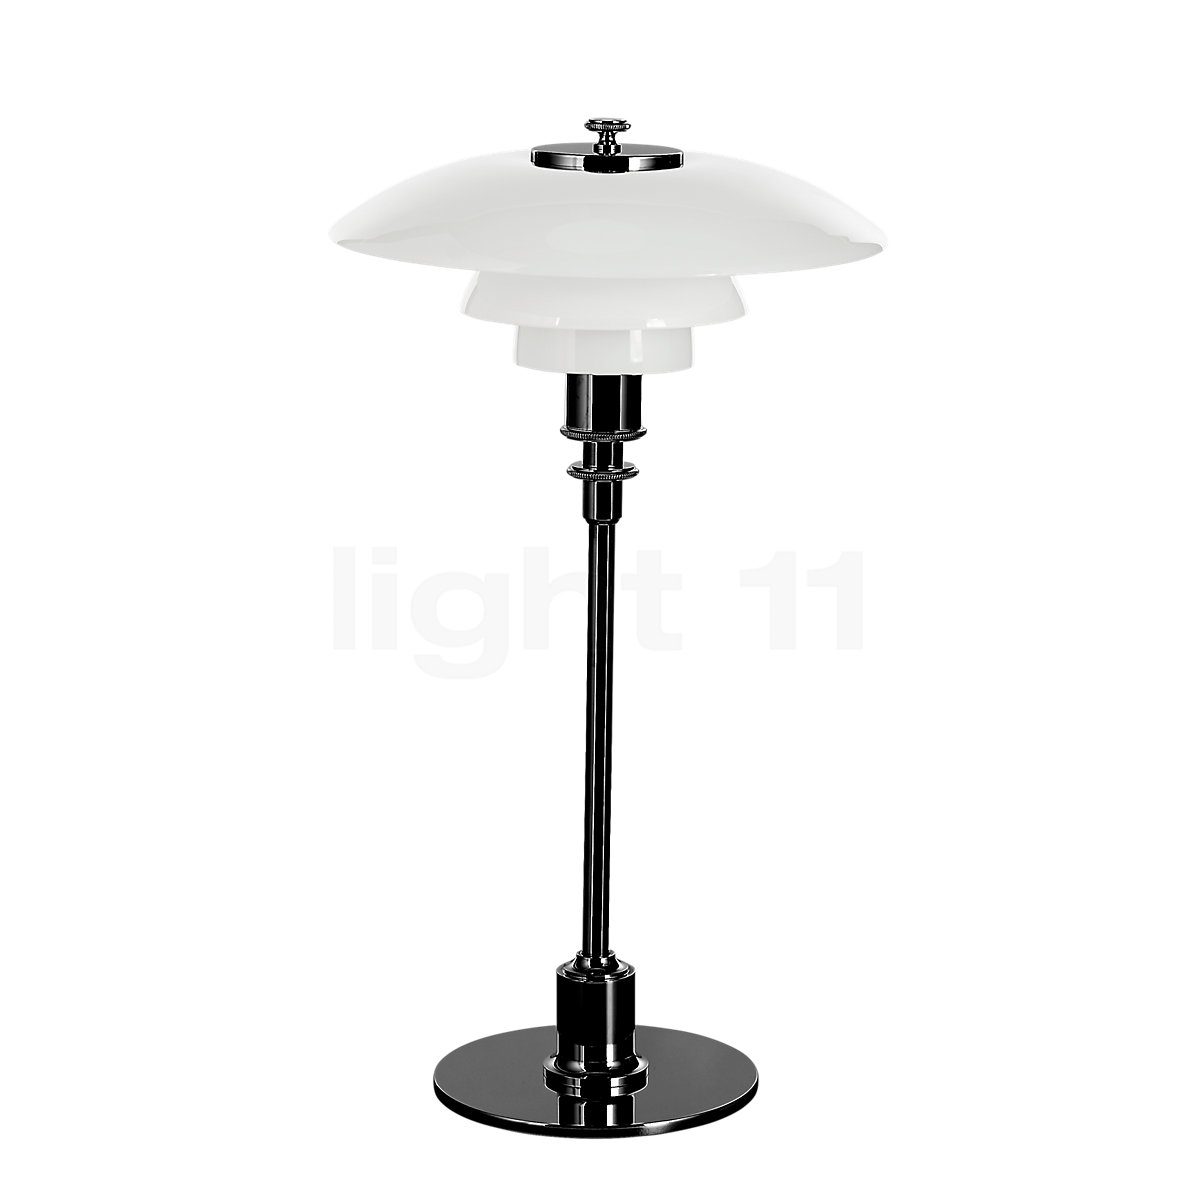 Louis Poulsen PH 2/1 table lamp, metallised black